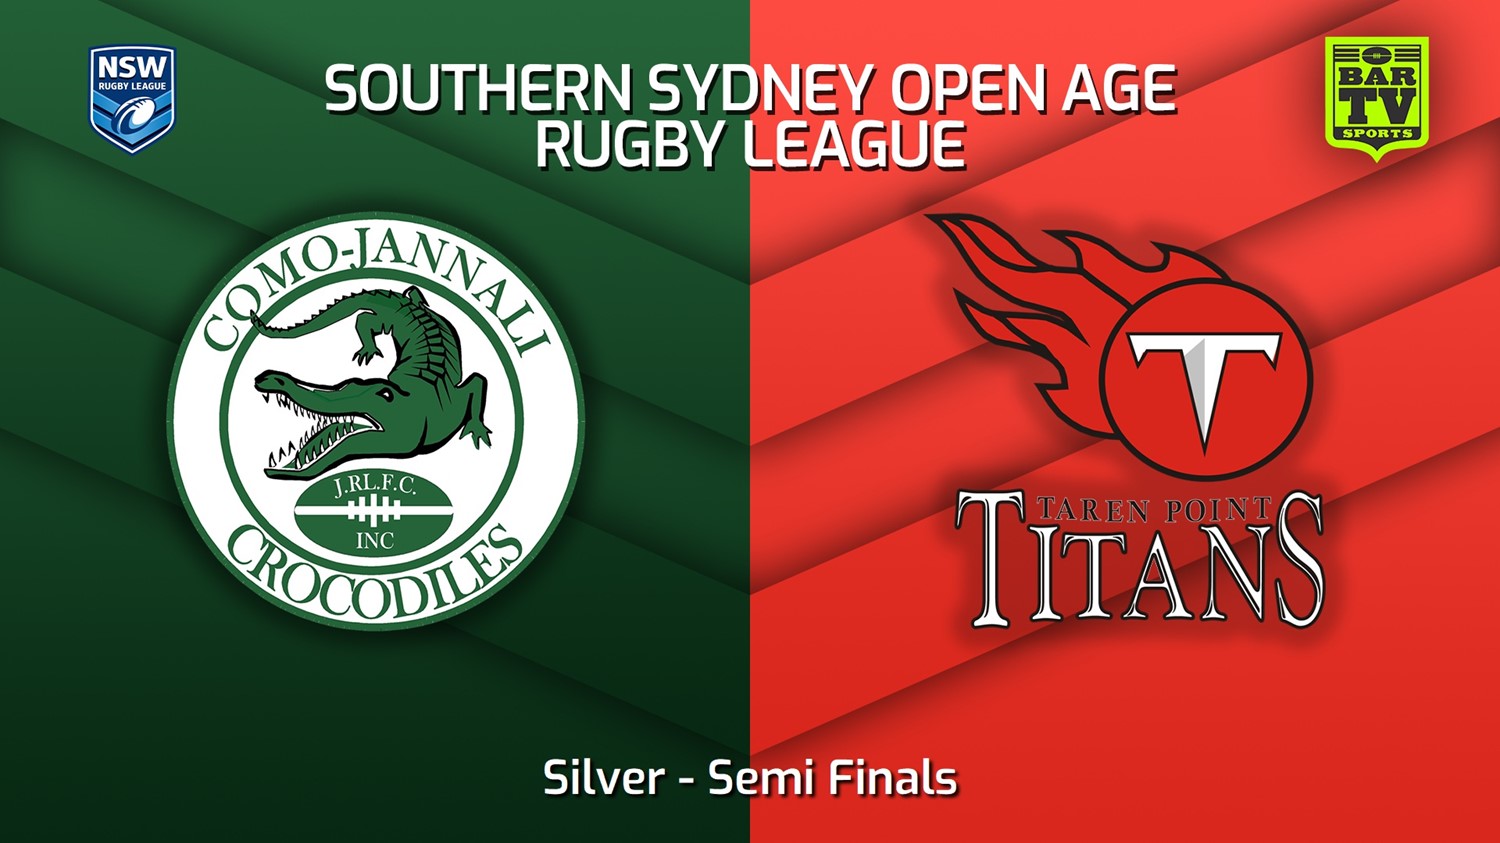 230820-S. Sydney Open Semi Finals - Silver - Como Jannali Crocodiles v Taren Point Titans Minigame Slate Image